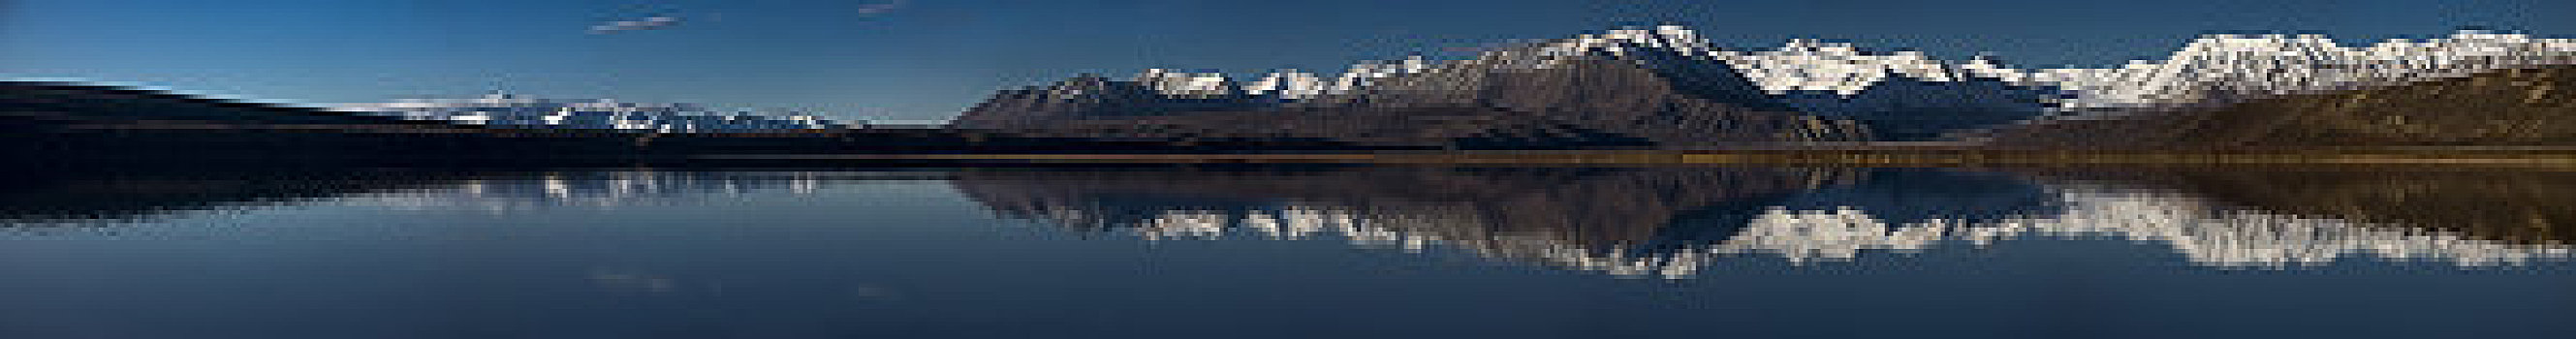 阿拉斯加山脉,反射,峰顶湖,河,室内,阿拉斯加,合成效果